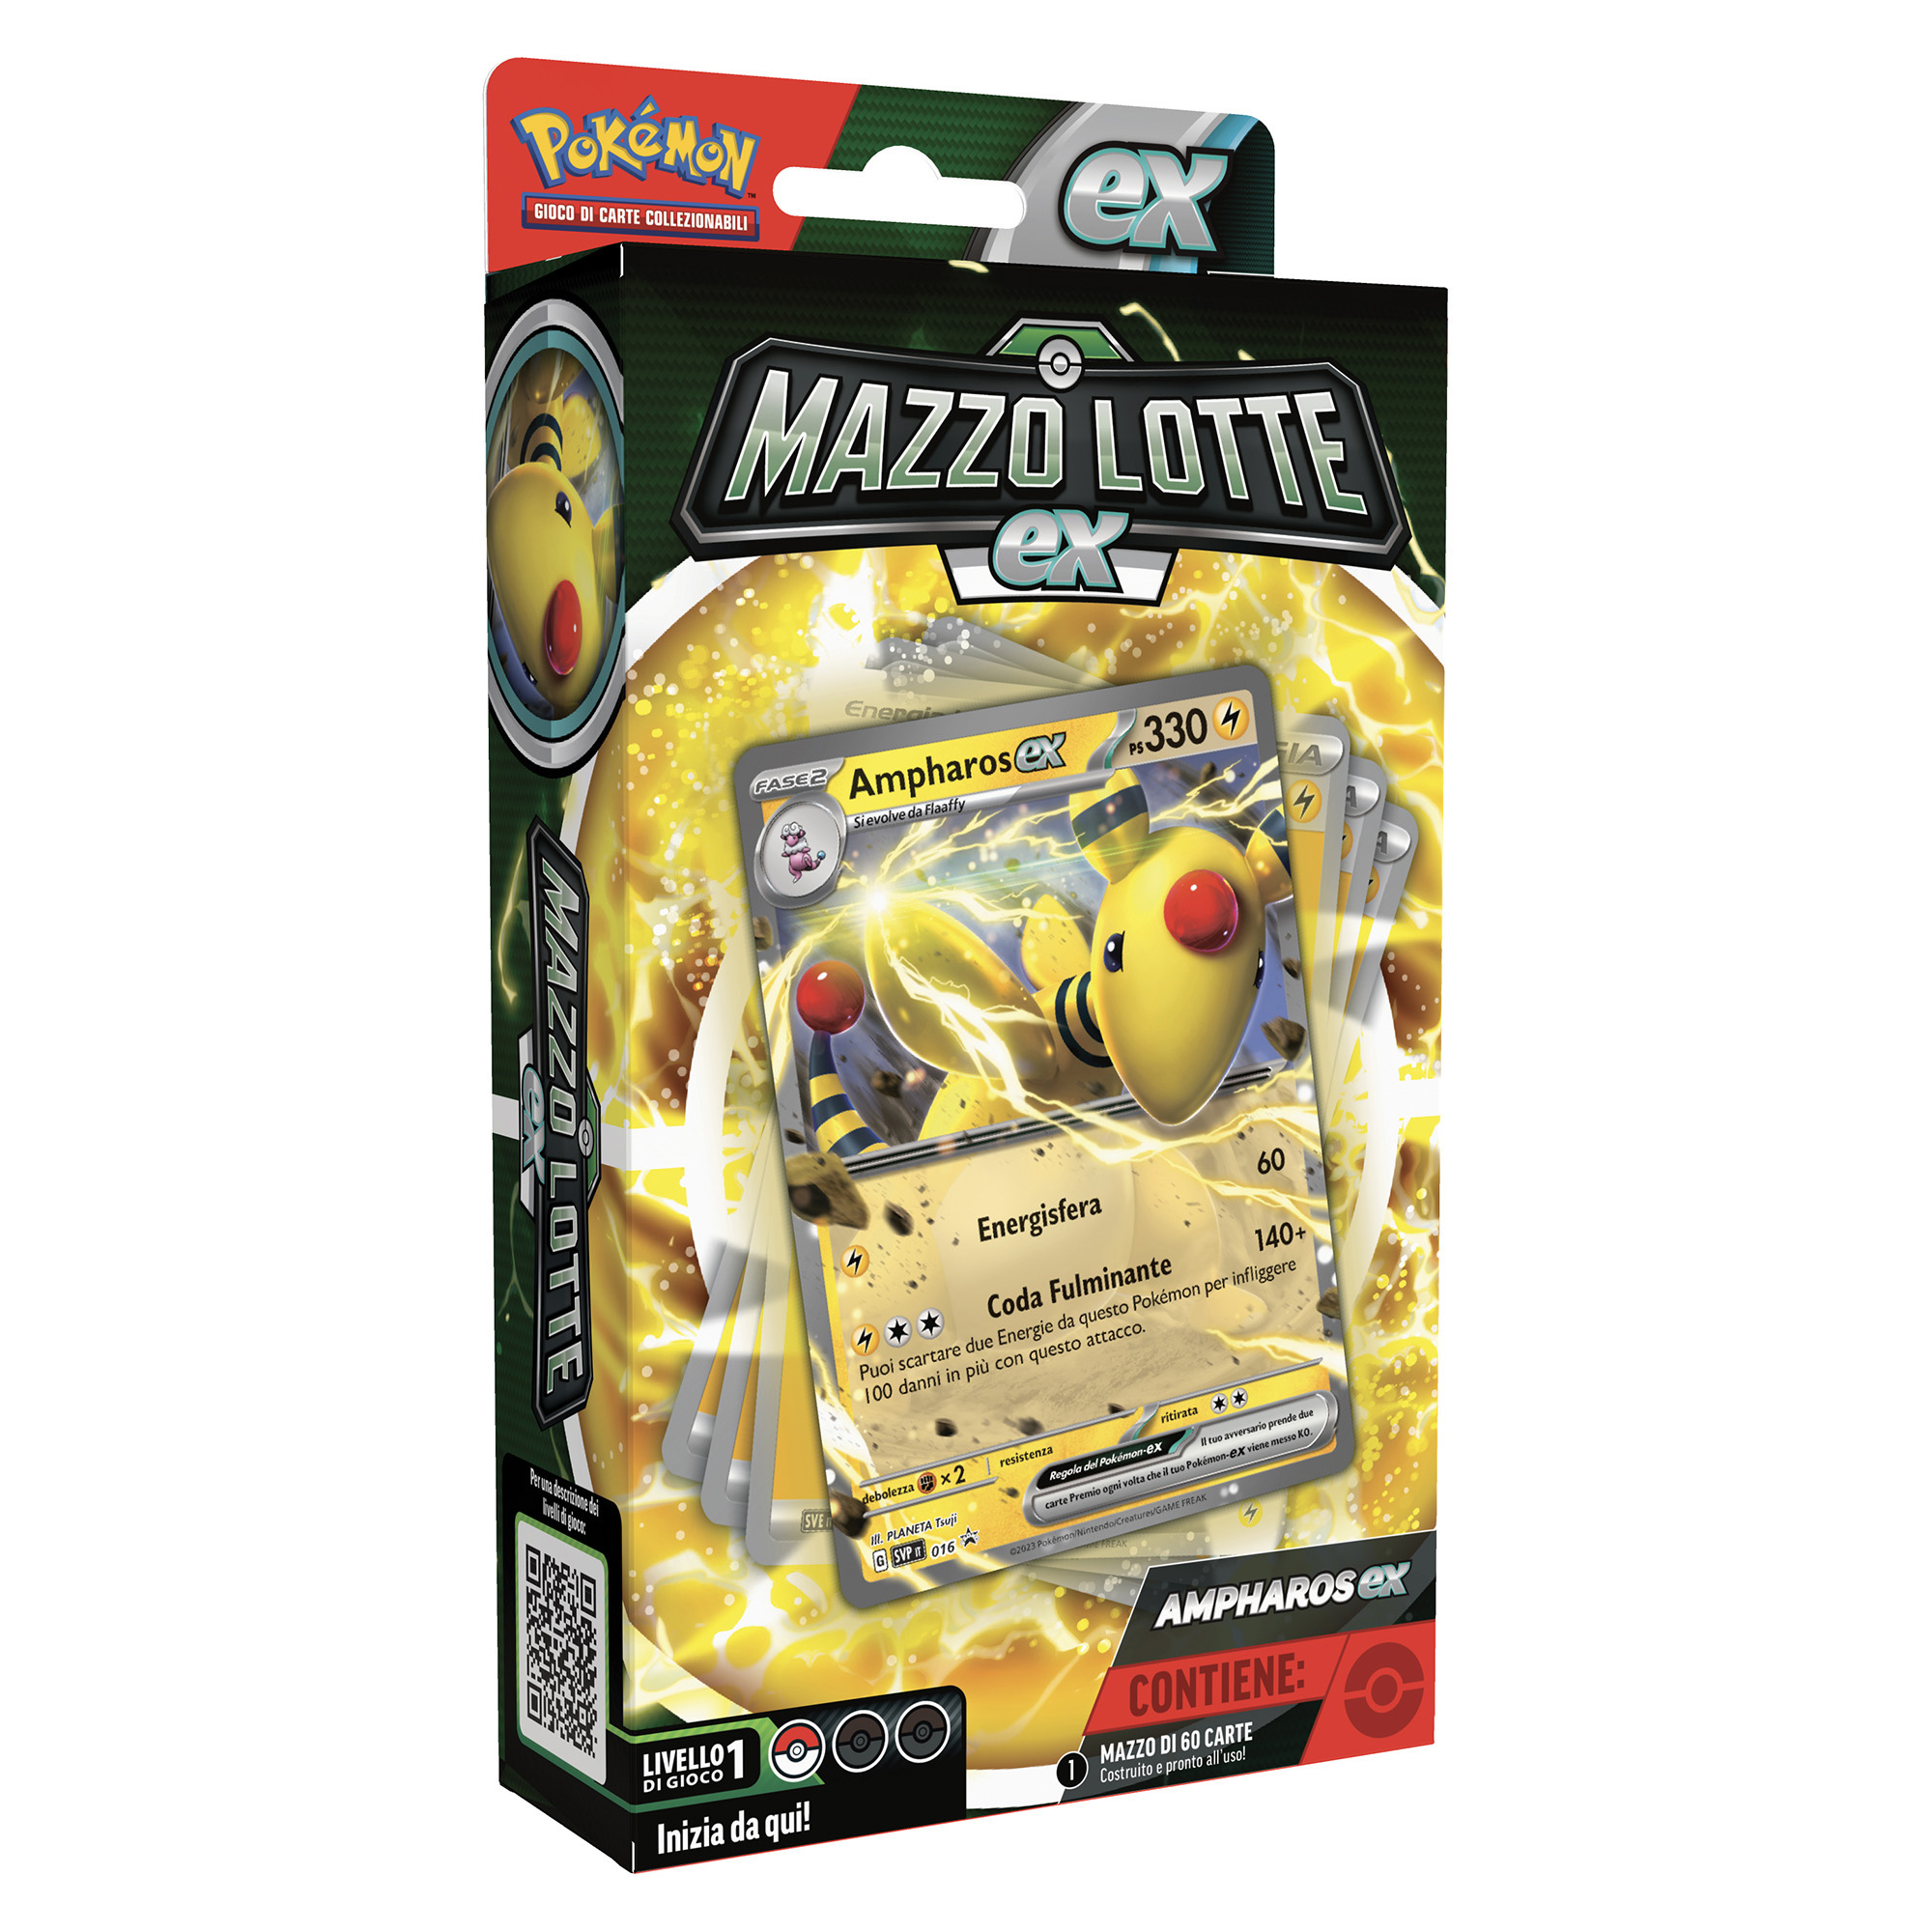 Pokémon Mazzo Lotte EX Ampharos-Ex / Lucario-Ex assortito - Pokémon